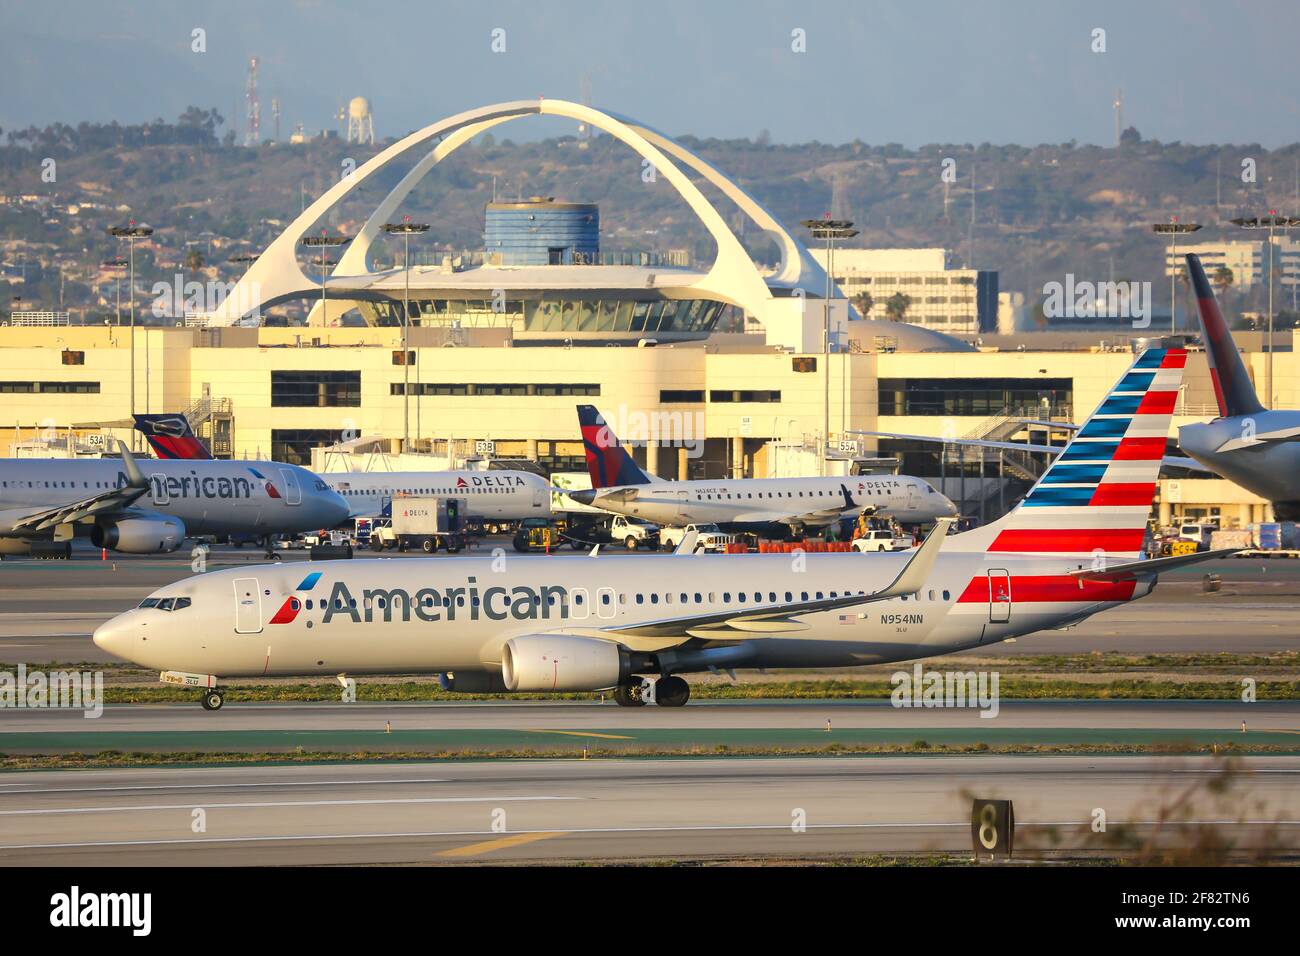 Los Angeles, USA – 20. Februar 2016: American Airlines Boeing 737-800 am Flughafen Los Angeles (LAX) in den Vereinigten Staaten. Boeing ist ein Flugzeugmanufa Stockfoto